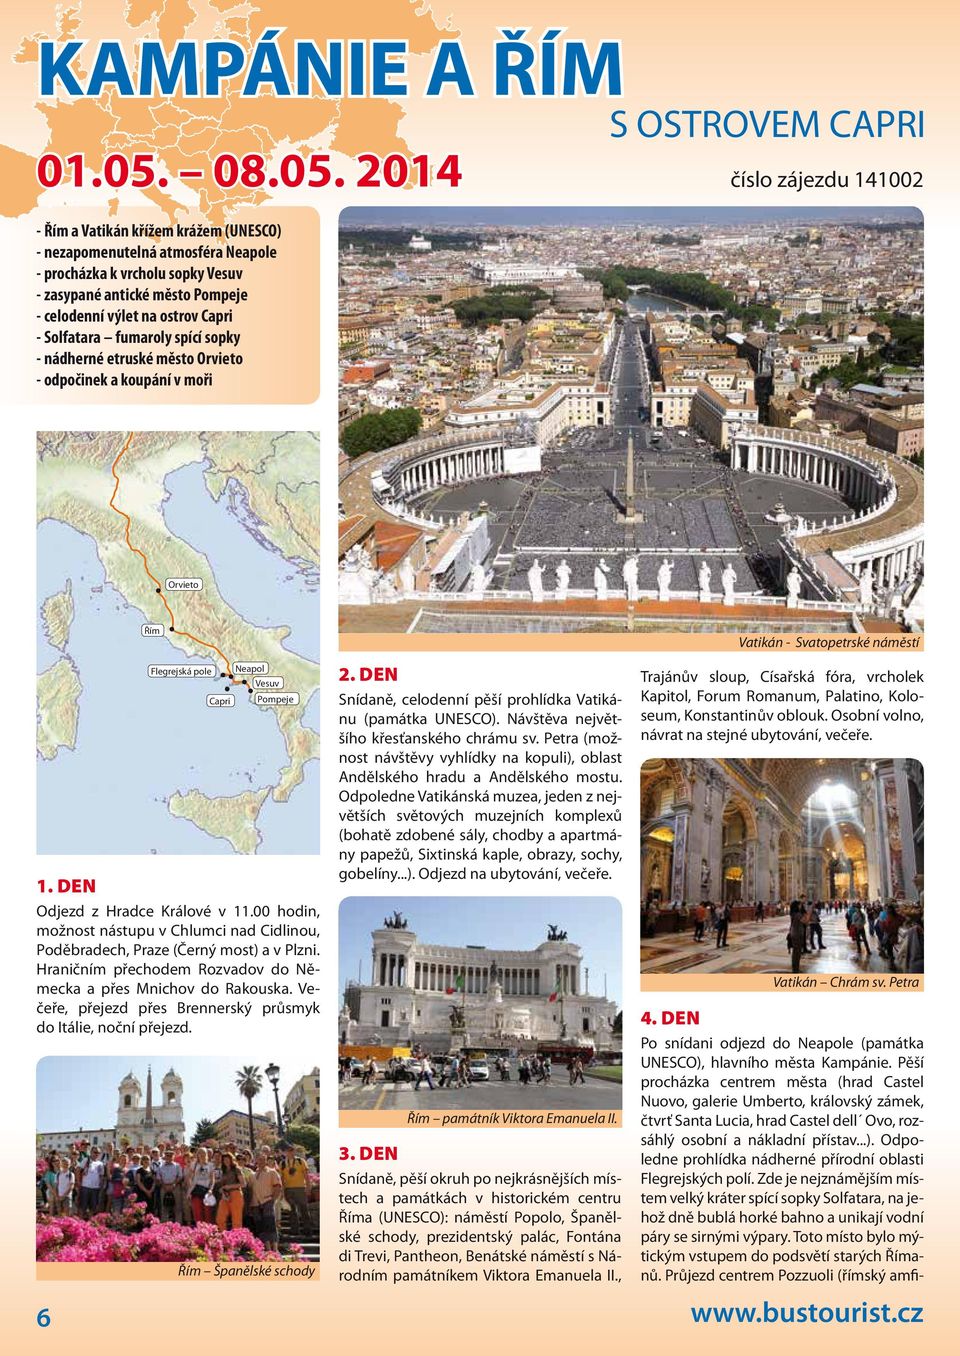 2014 - Řím a Vatikán křížem krážem (UNESCO) - nezapomenutelná atmosféra Neapole - procházka k vrcholu sopky Vesuv - zasypané antické město Pompeje - celodenní výlet na ostrov Capri - Solfatara